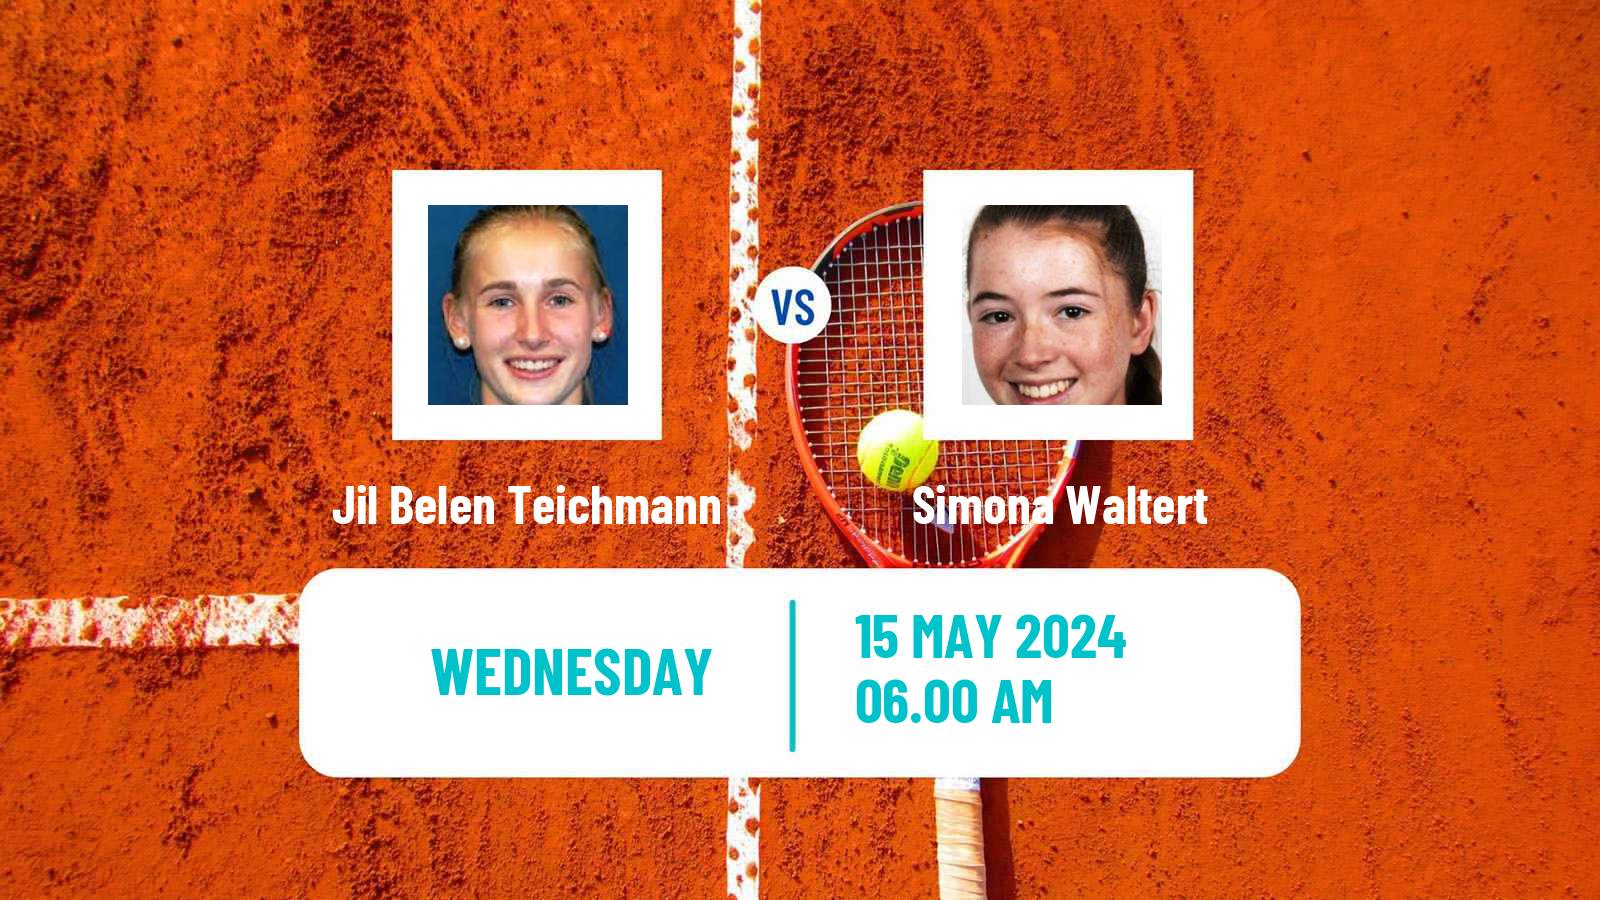 Tennis ITF W75 Zagreb Women Jil Belen Teichmann - Simona Waltert